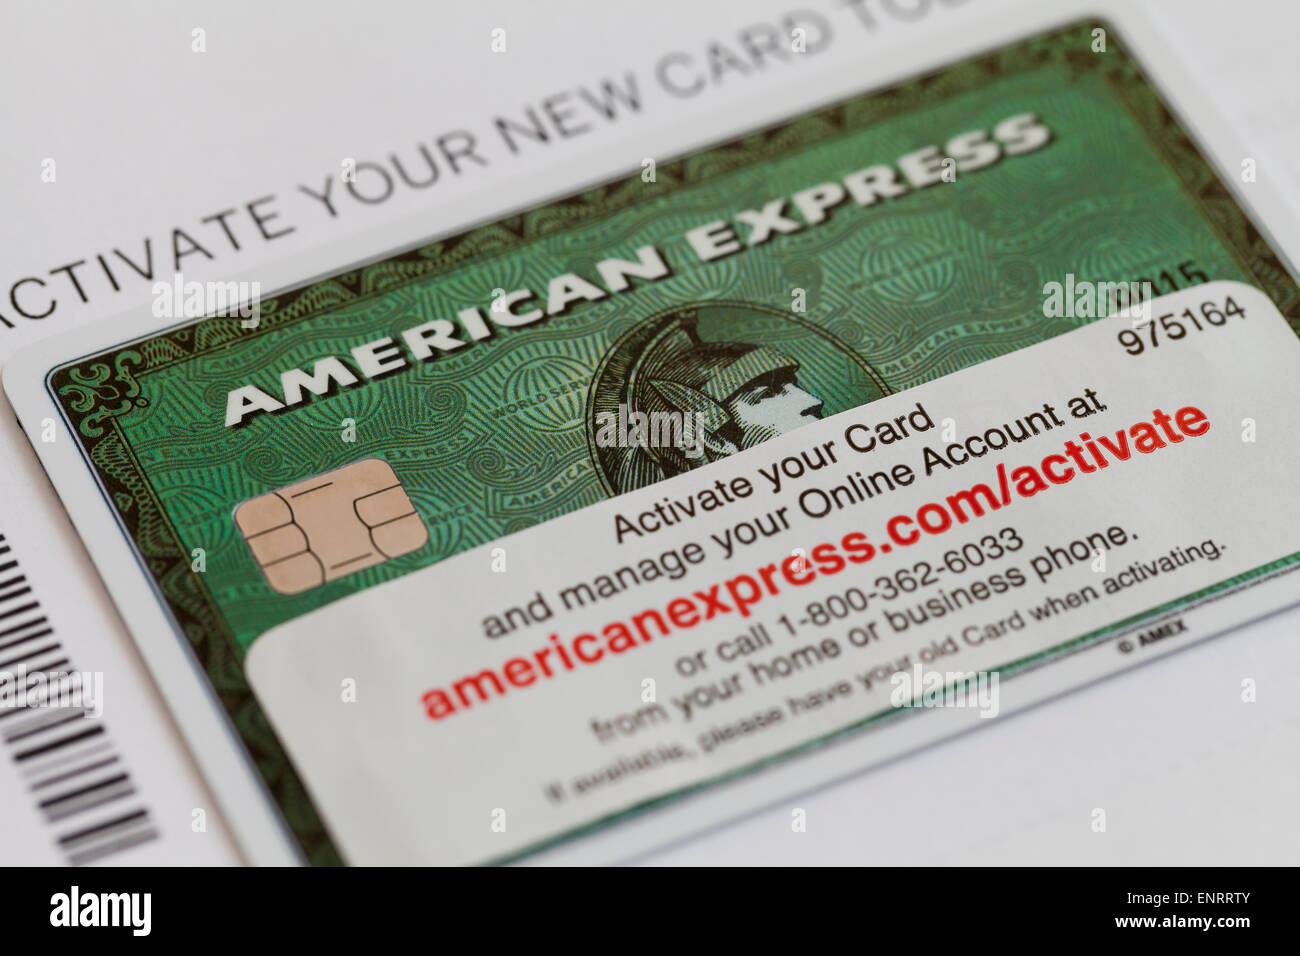 Nuova carta American Express con informazioni di attivazione - USA Foto  stock - Alamy